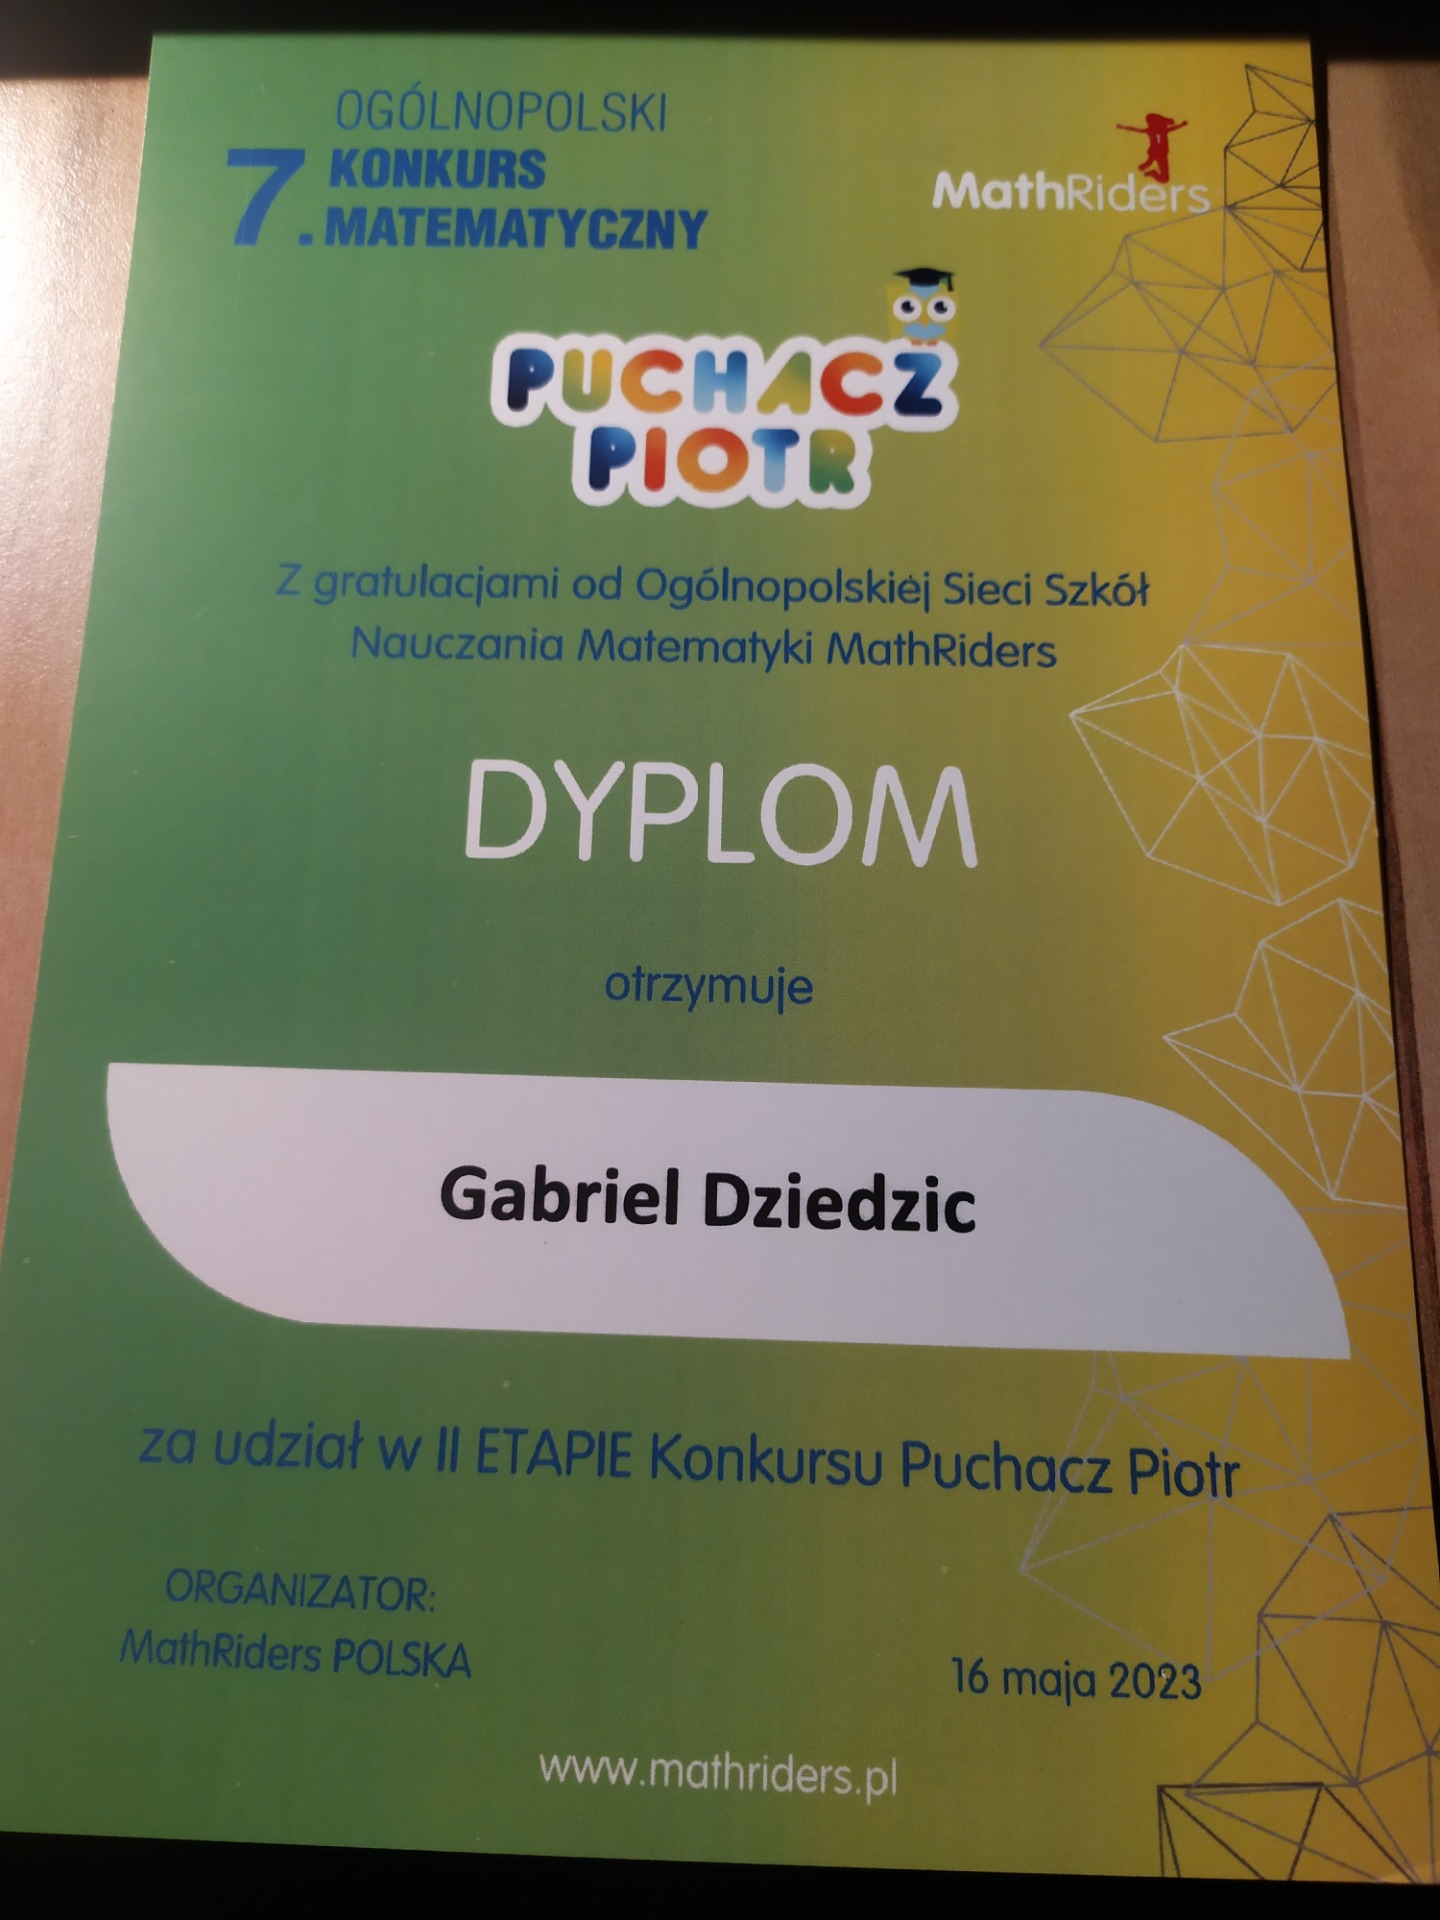 Ogólnopolski konkurs matematyczny dla klas 1-3 –Puchacz Piotr - Obrazek 2